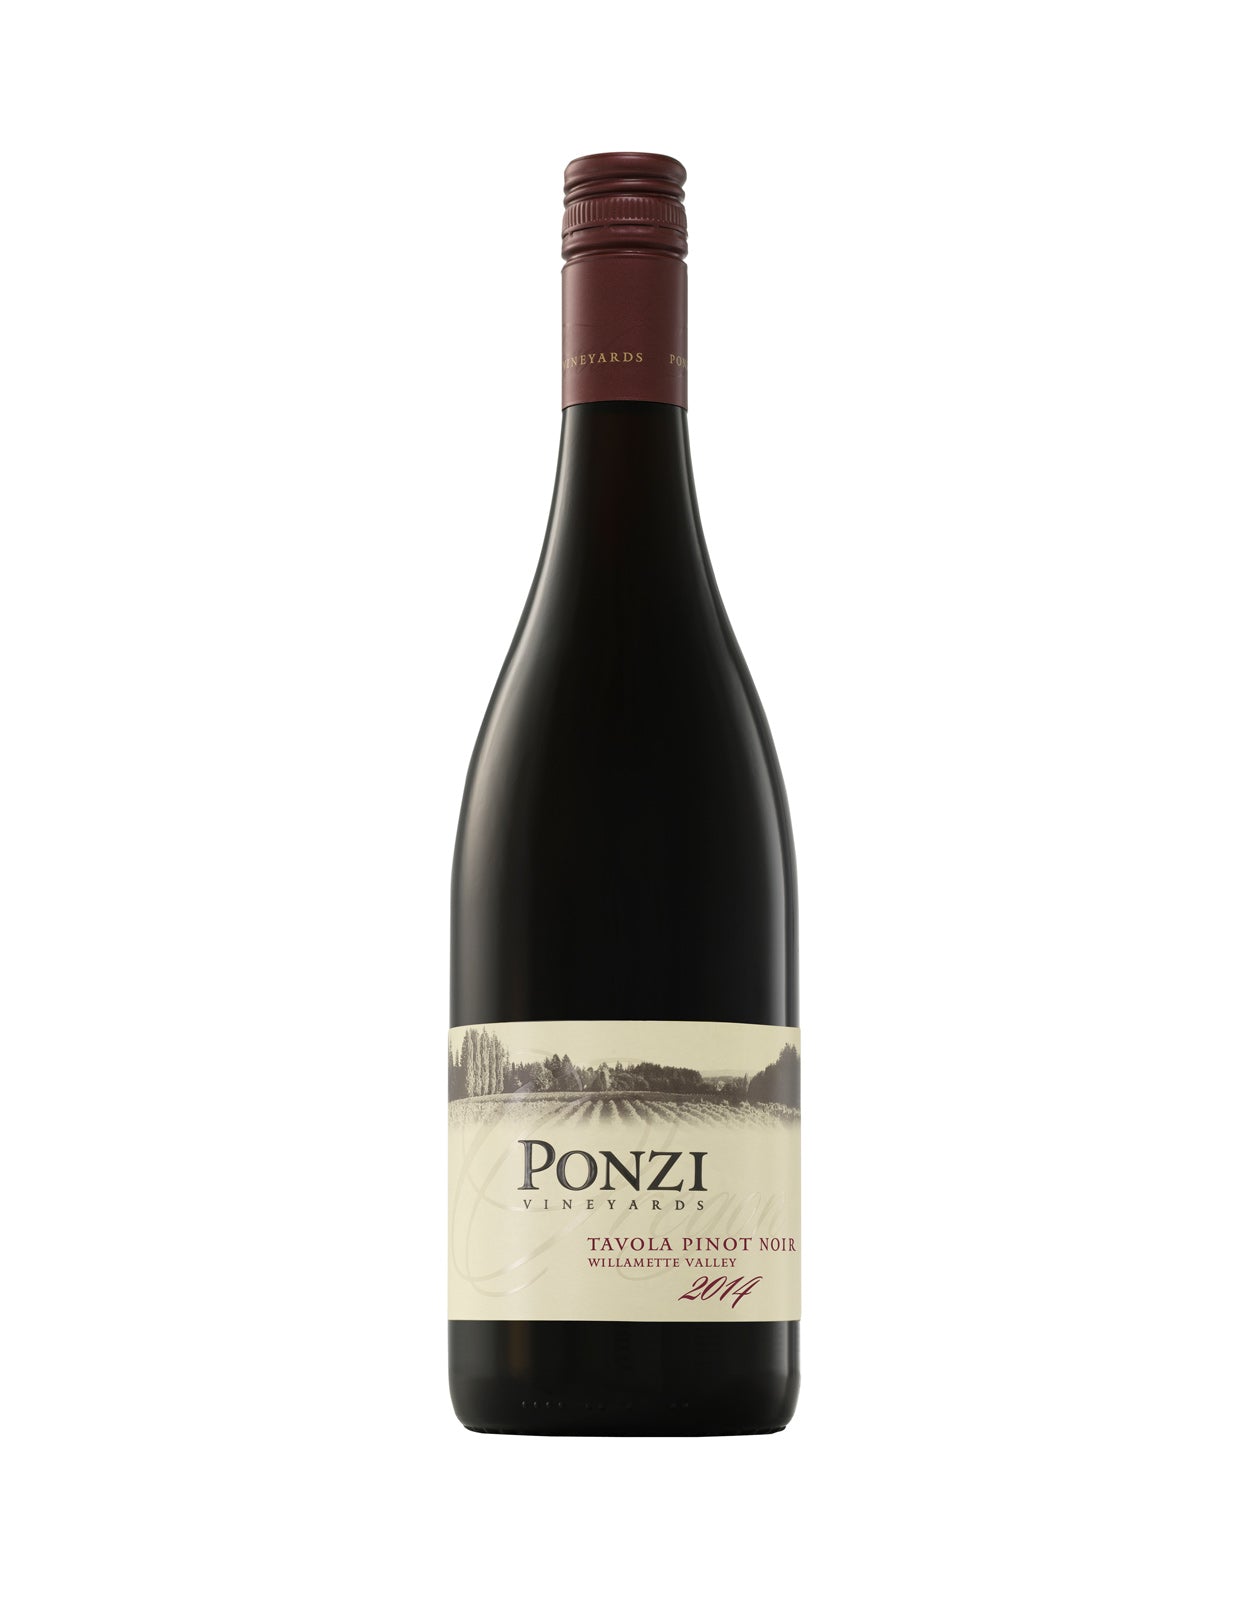 Ponzi Tavola Pinot Noir 2018